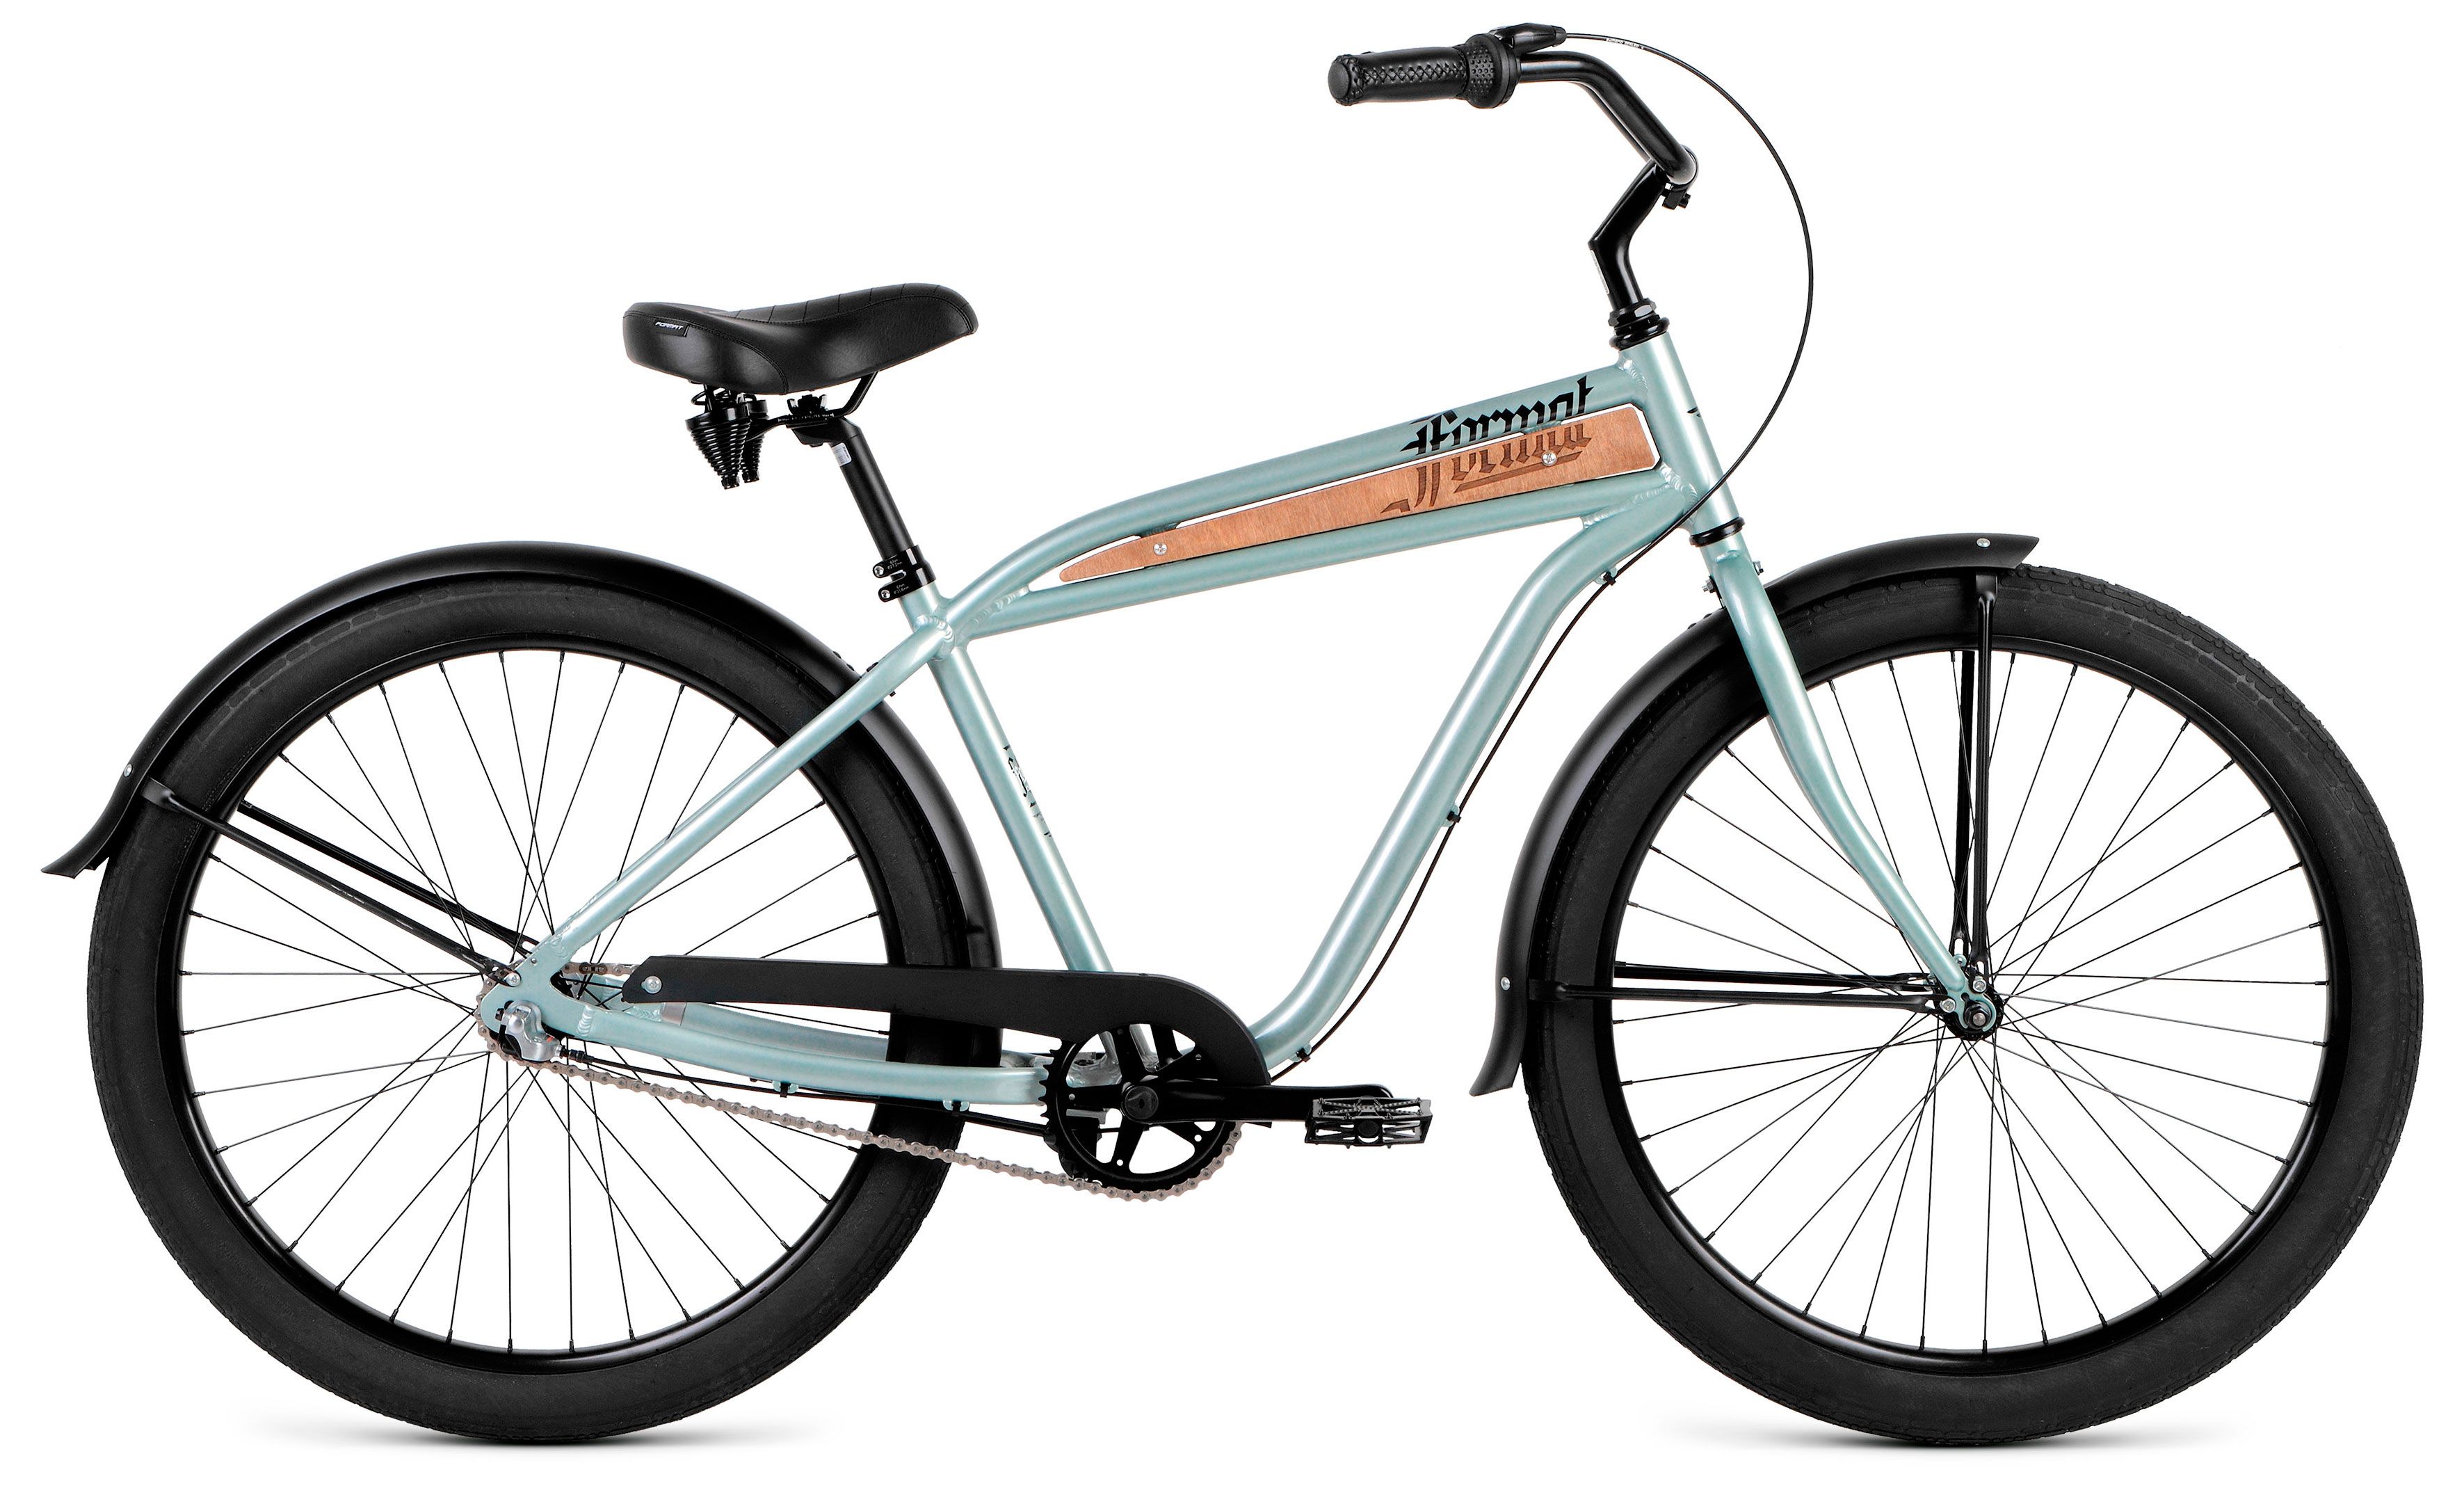  Отзывы о Городском велосипеде Format 5512 2021